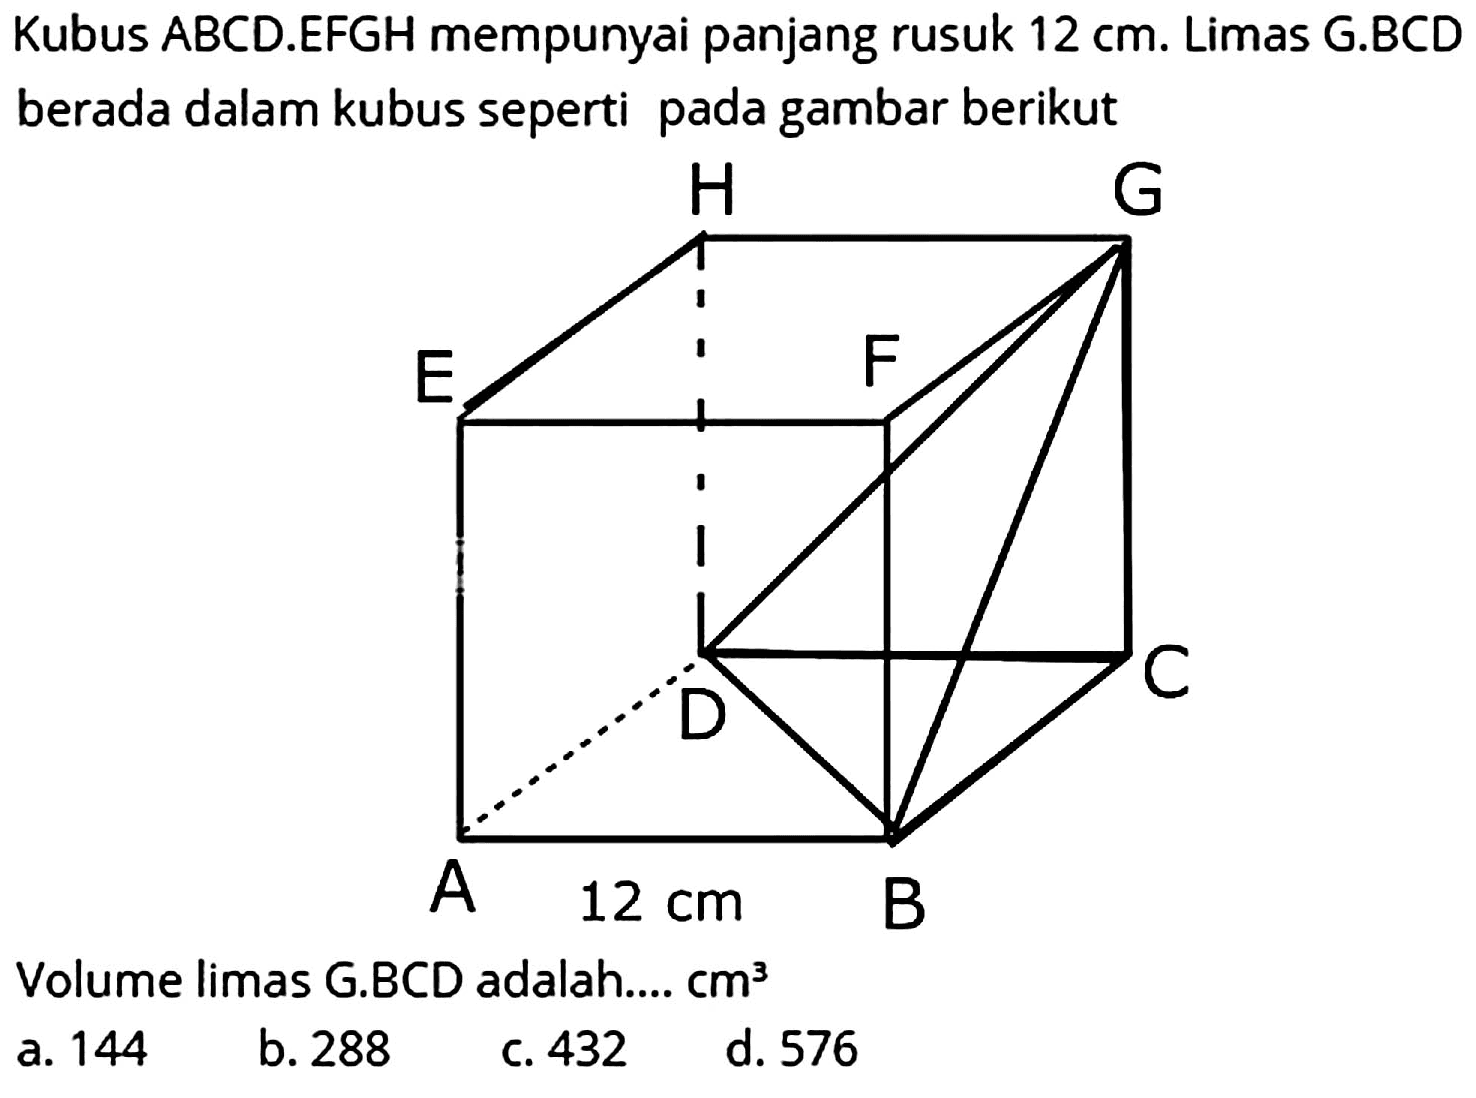 Kubus ABCD.EFGH mempunyai panjang rusuk  12 cm . Limas G.BCD berada dalam kubus seperti pada gambar berikut